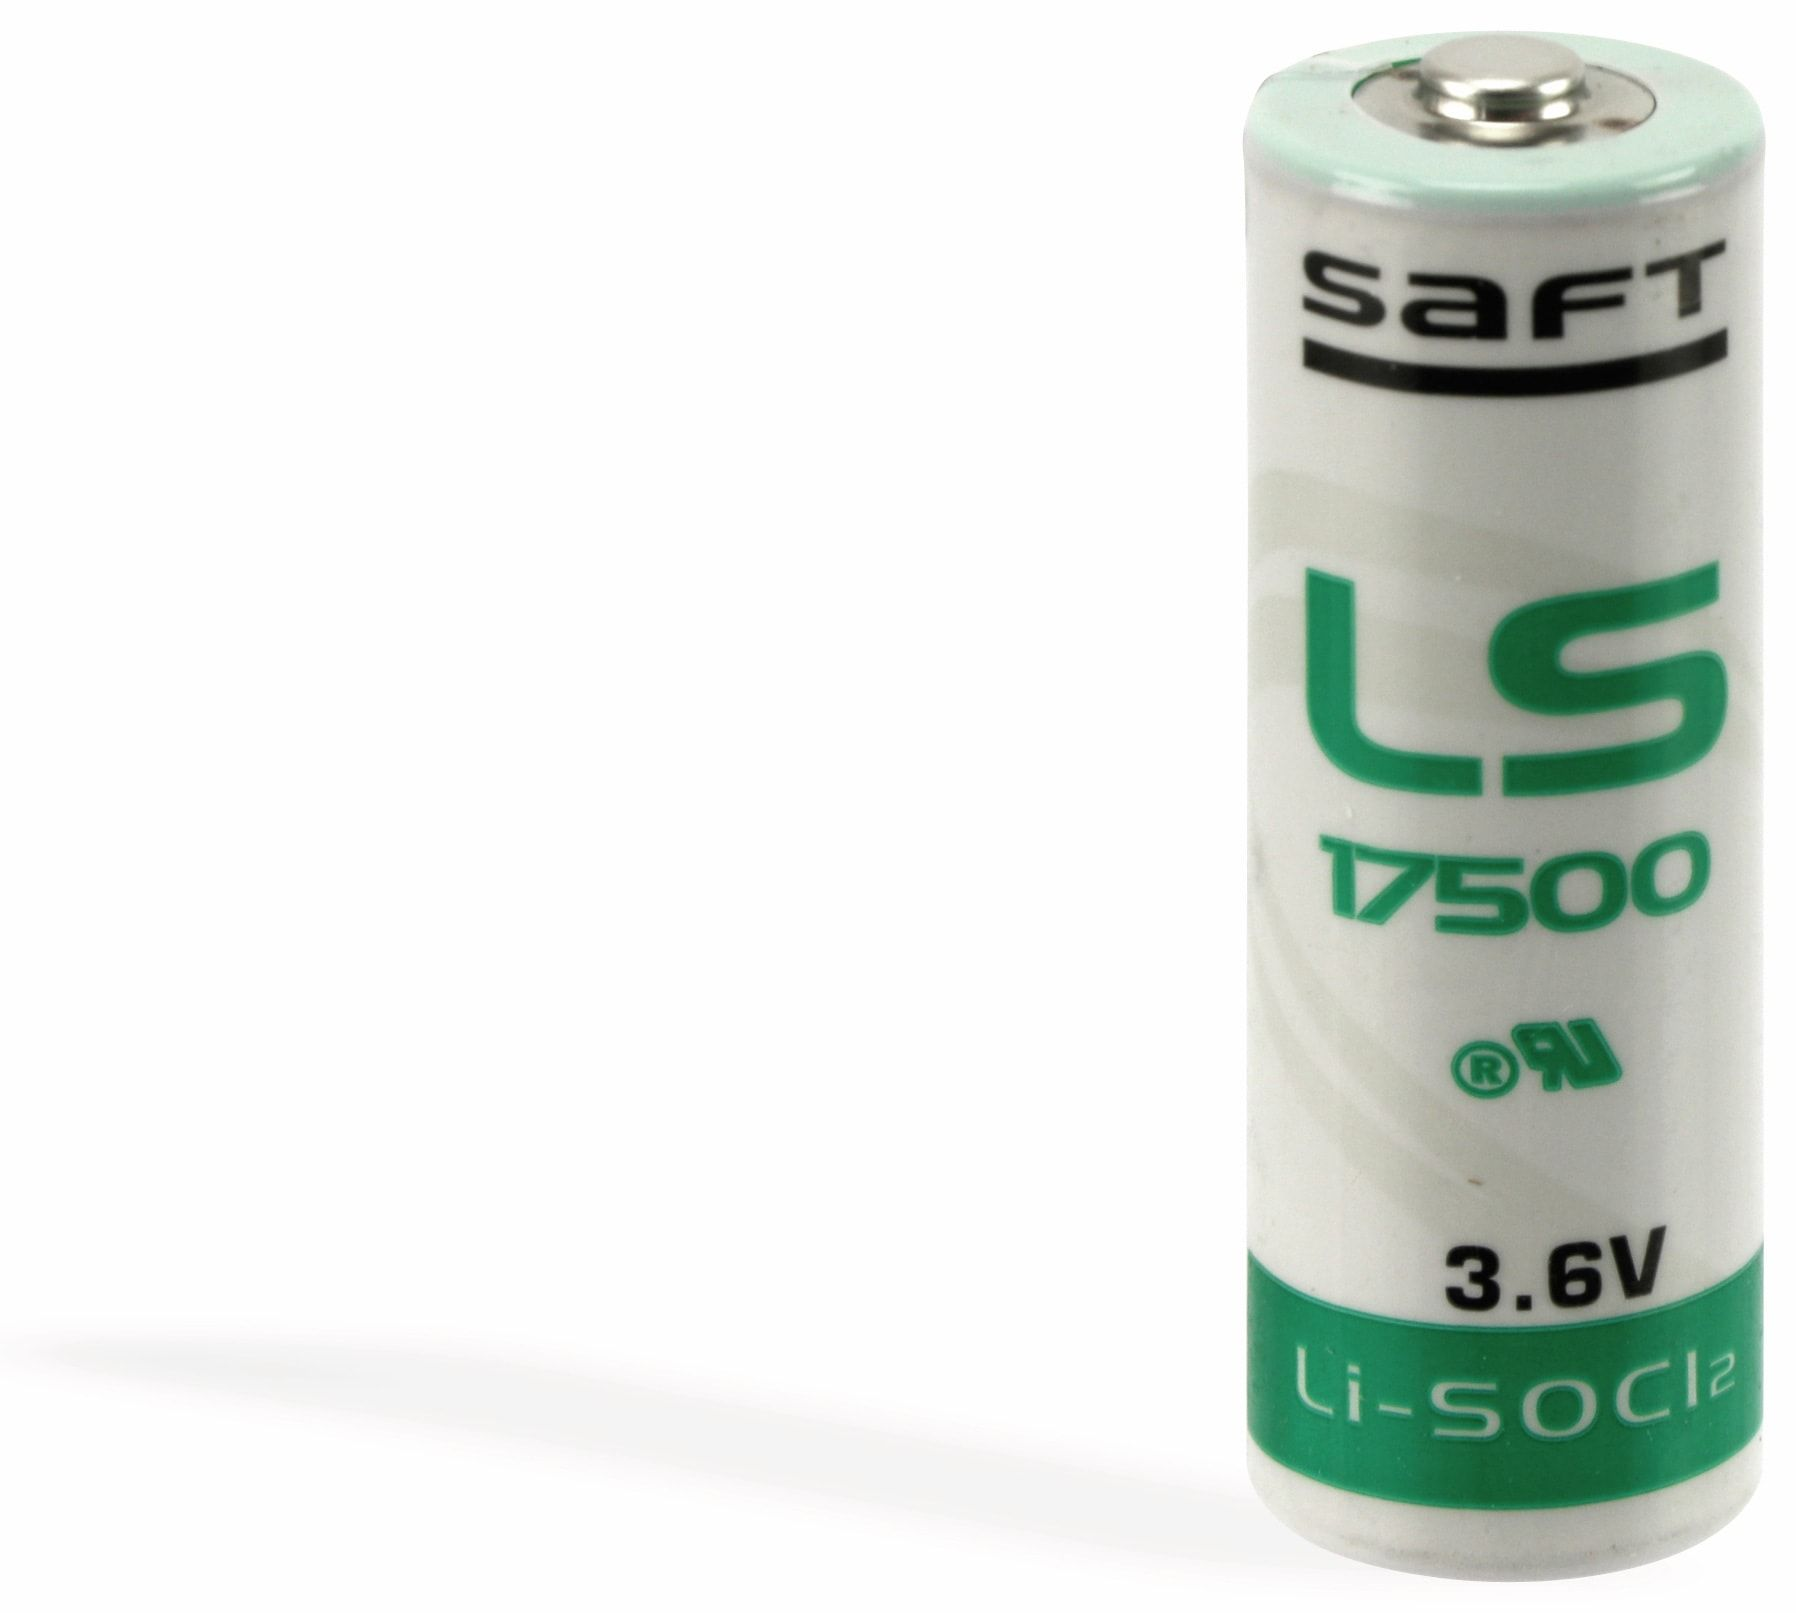 3,6Ah, Batterie Lithium-Batterie 3,6V, (Li-SOCl2) A(Bobbin) Lithium-Thionylchlorid SAFT LS17500,